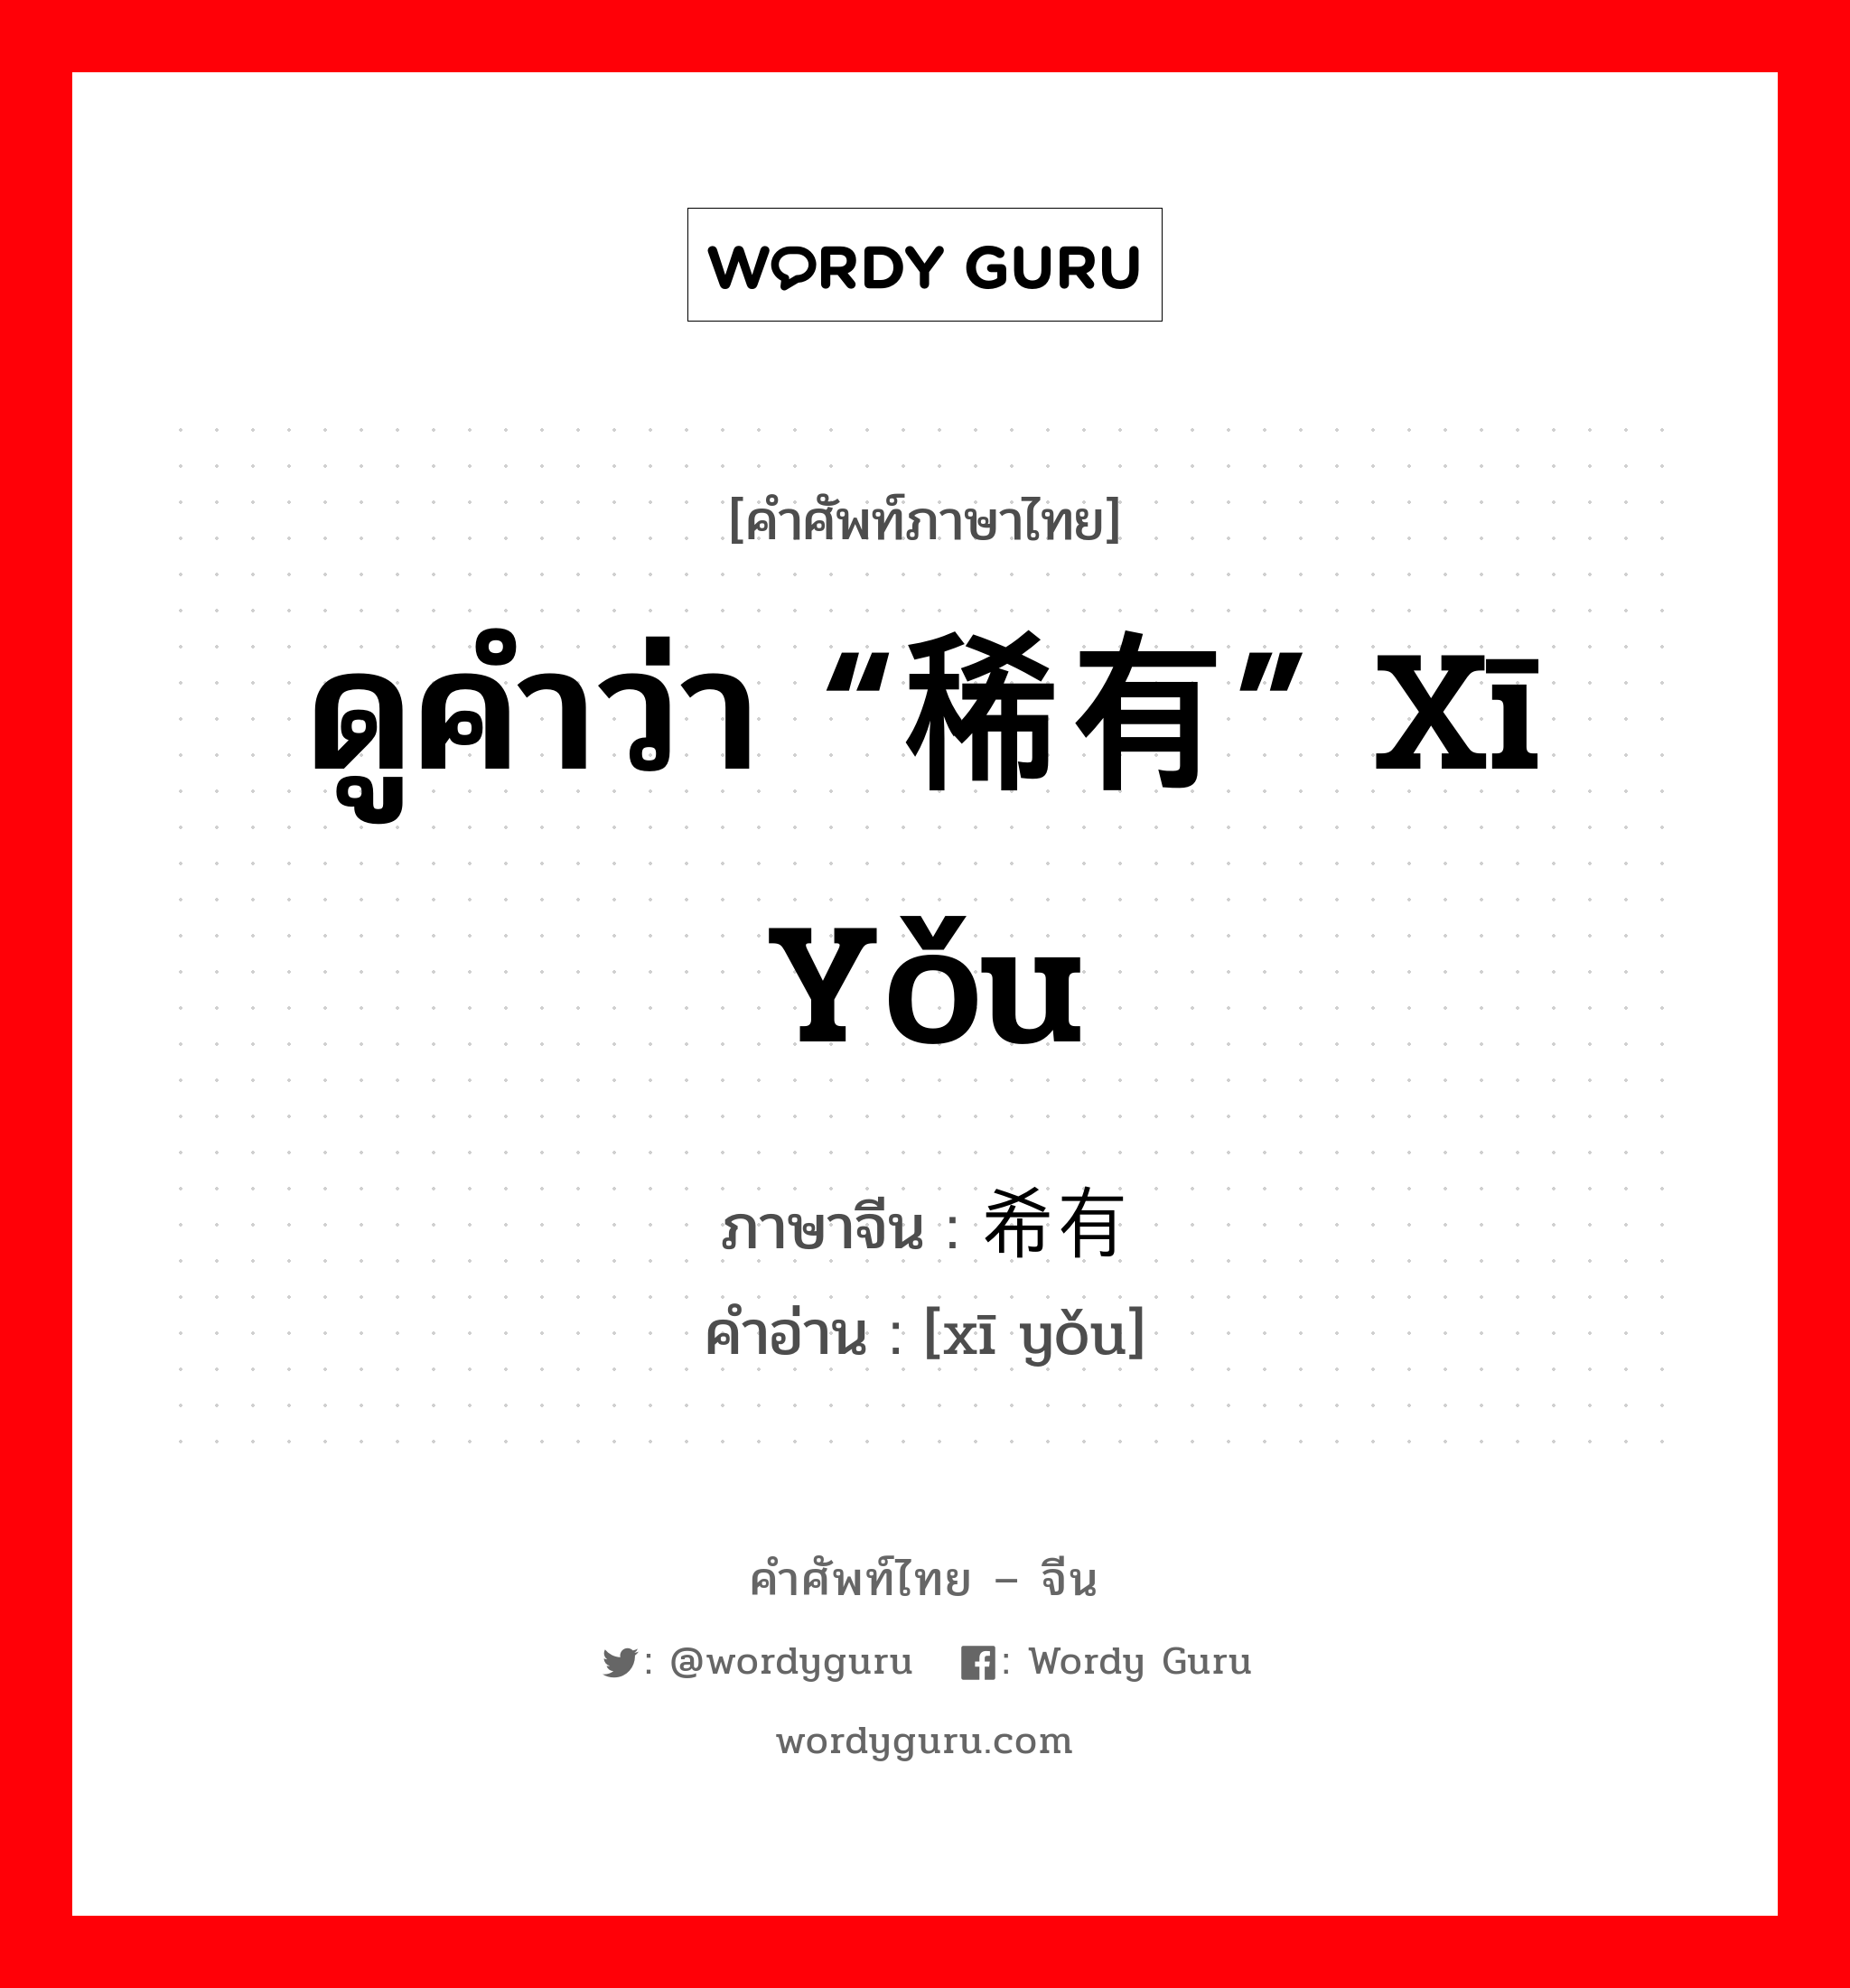 ดูคำว่า “稀有” xī yǒu ภาษาจีนคืออะไร, คำศัพท์ภาษาไทย - จีน ดูคำว่า “稀有” xī yǒu ภาษาจีน 希有 คำอ่าน [xī yǒu]